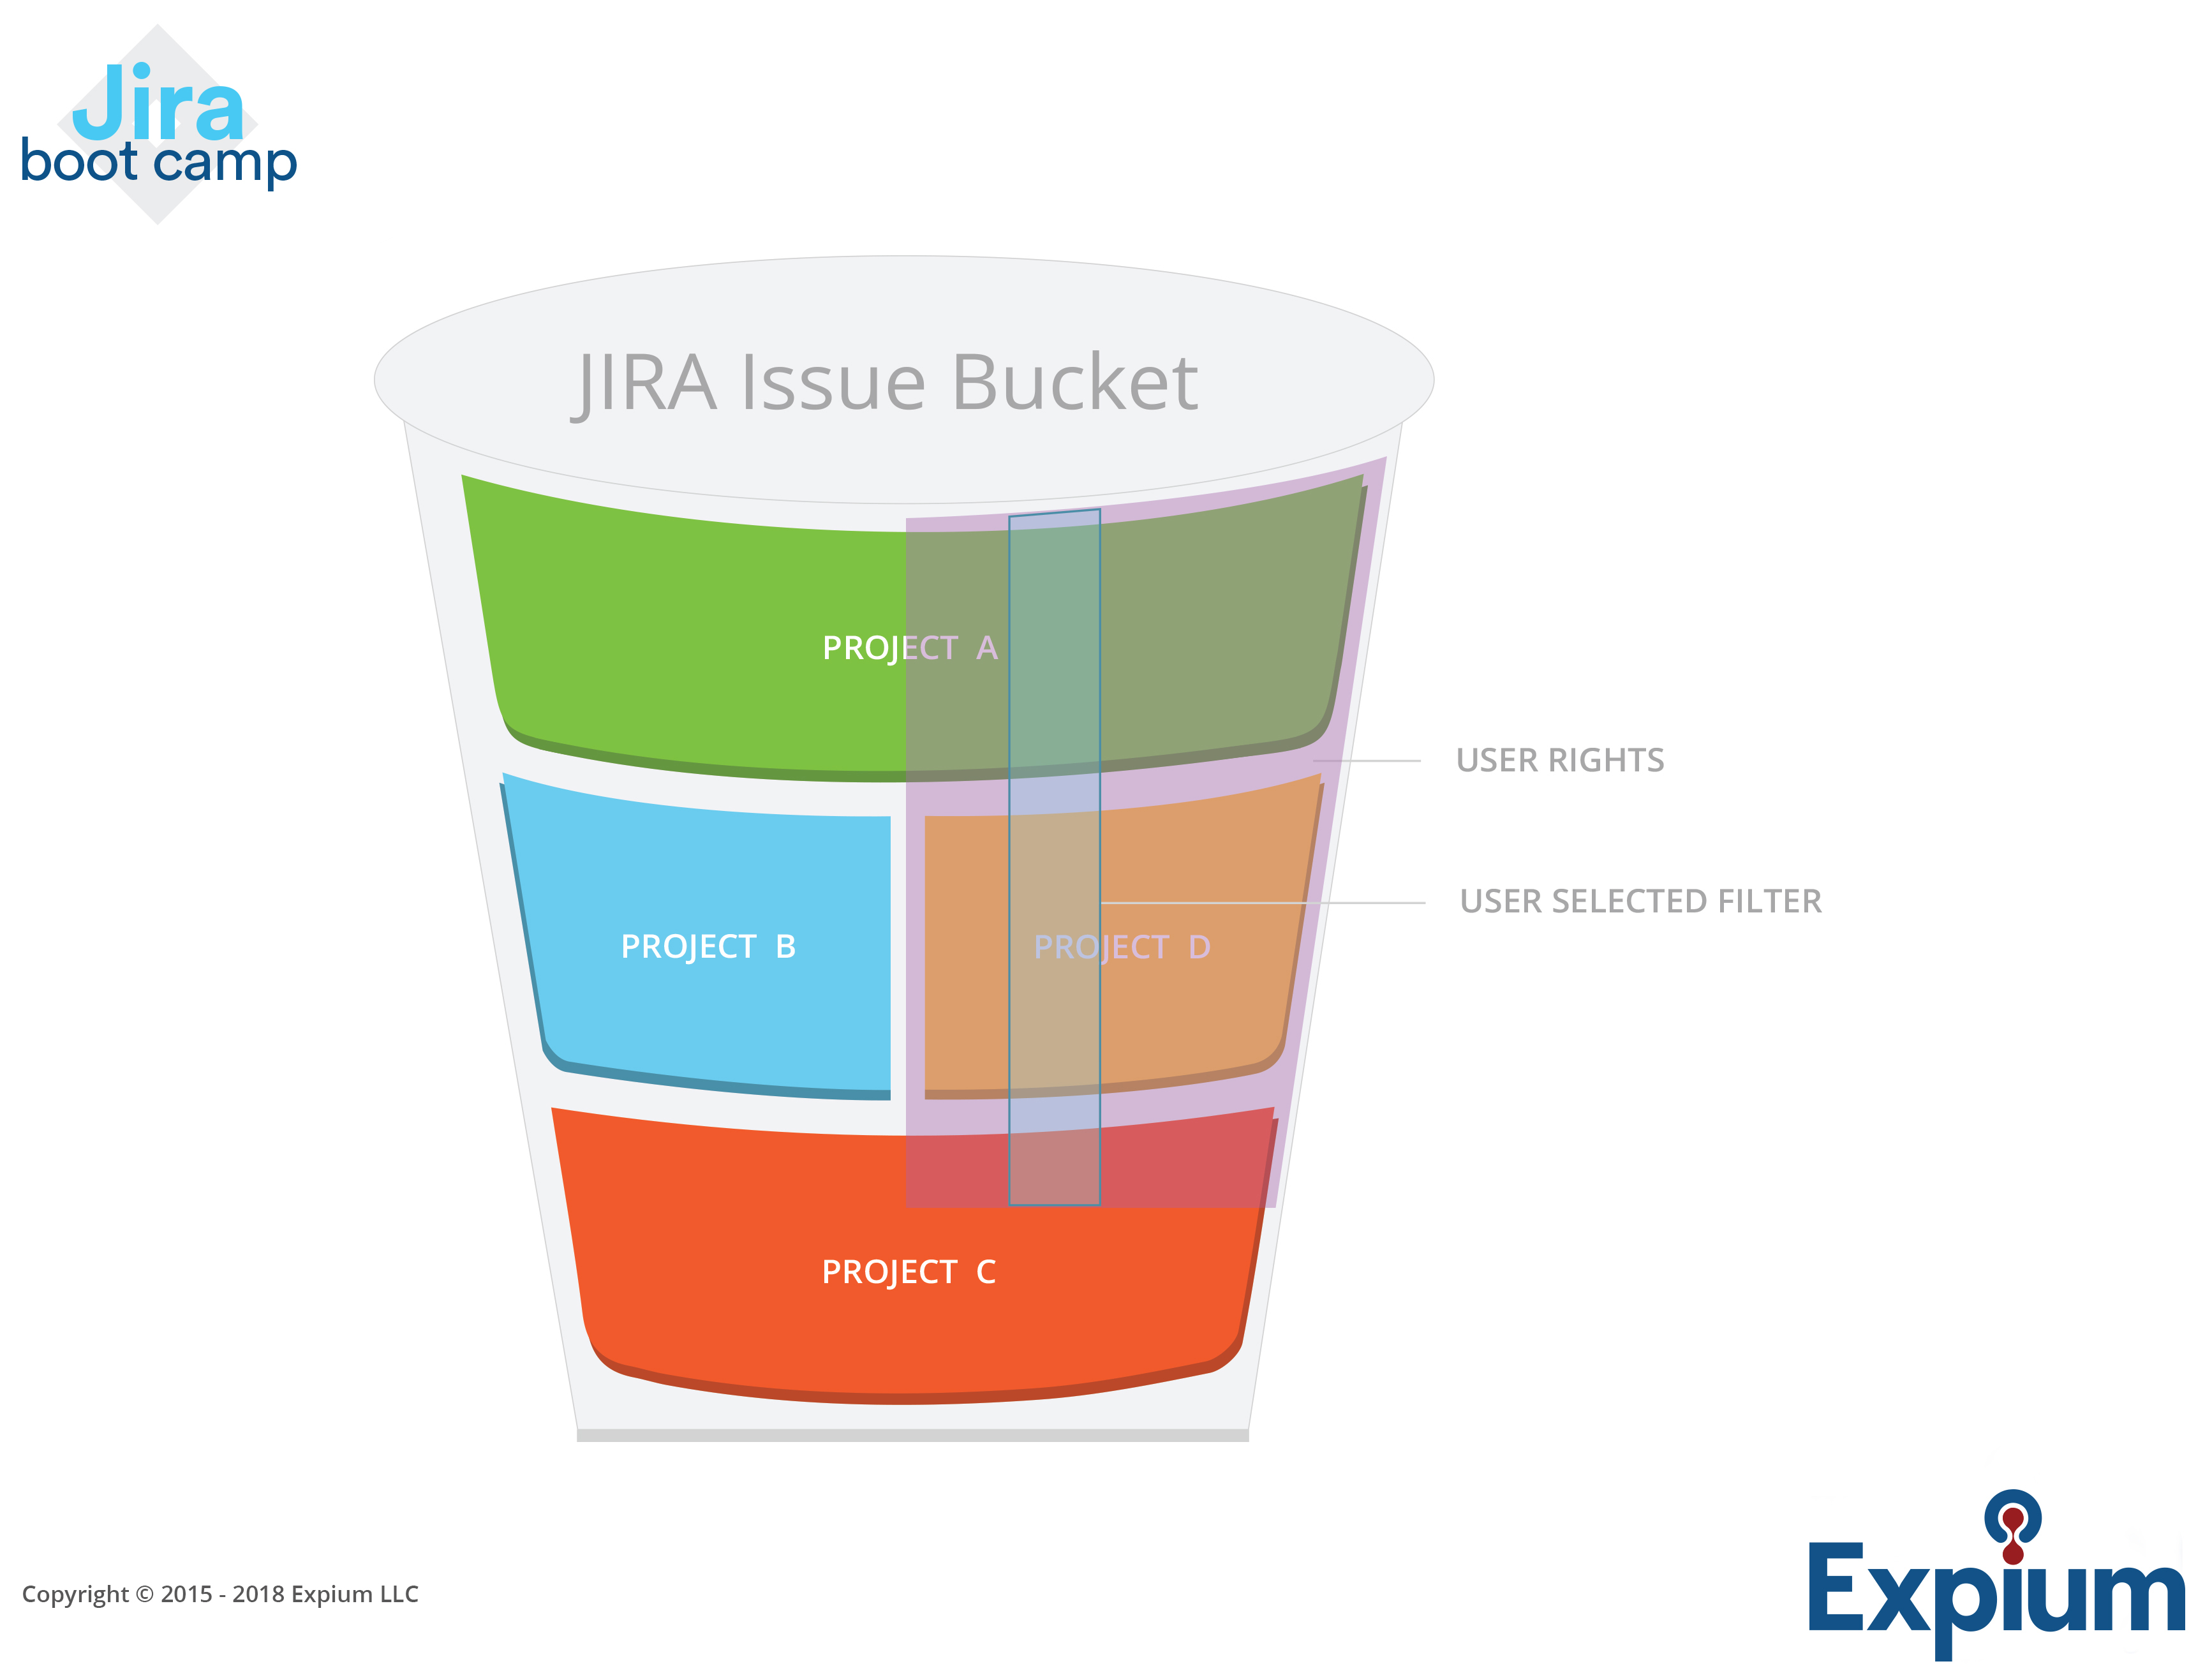 jira-issue-bucket-expium-1